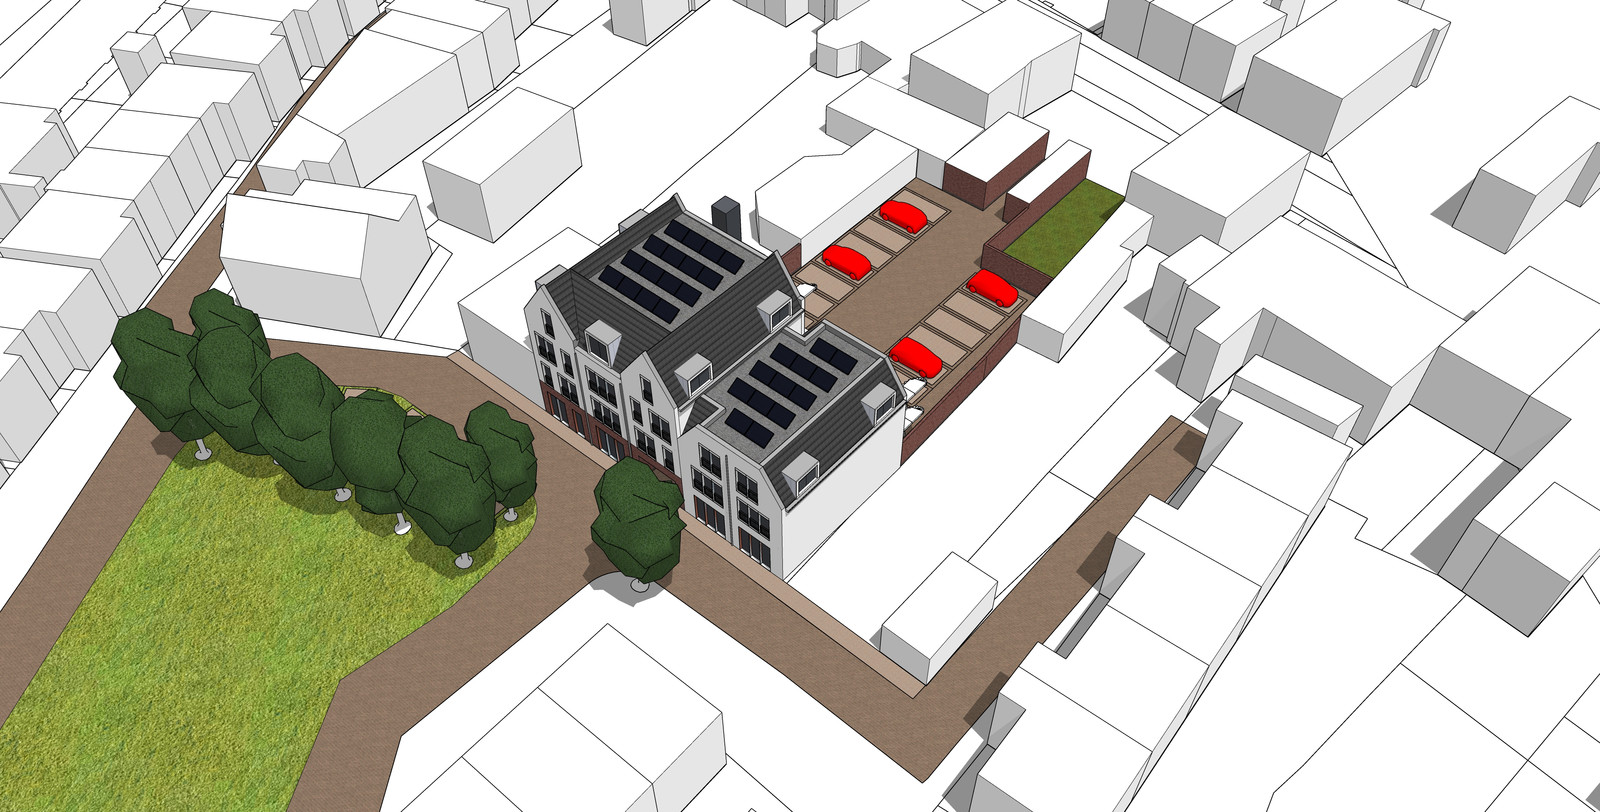 Vijftien nieuwe, sociale appartementen aan de Malenborch in hartje Huissen. Afbeelding ter illustratie.